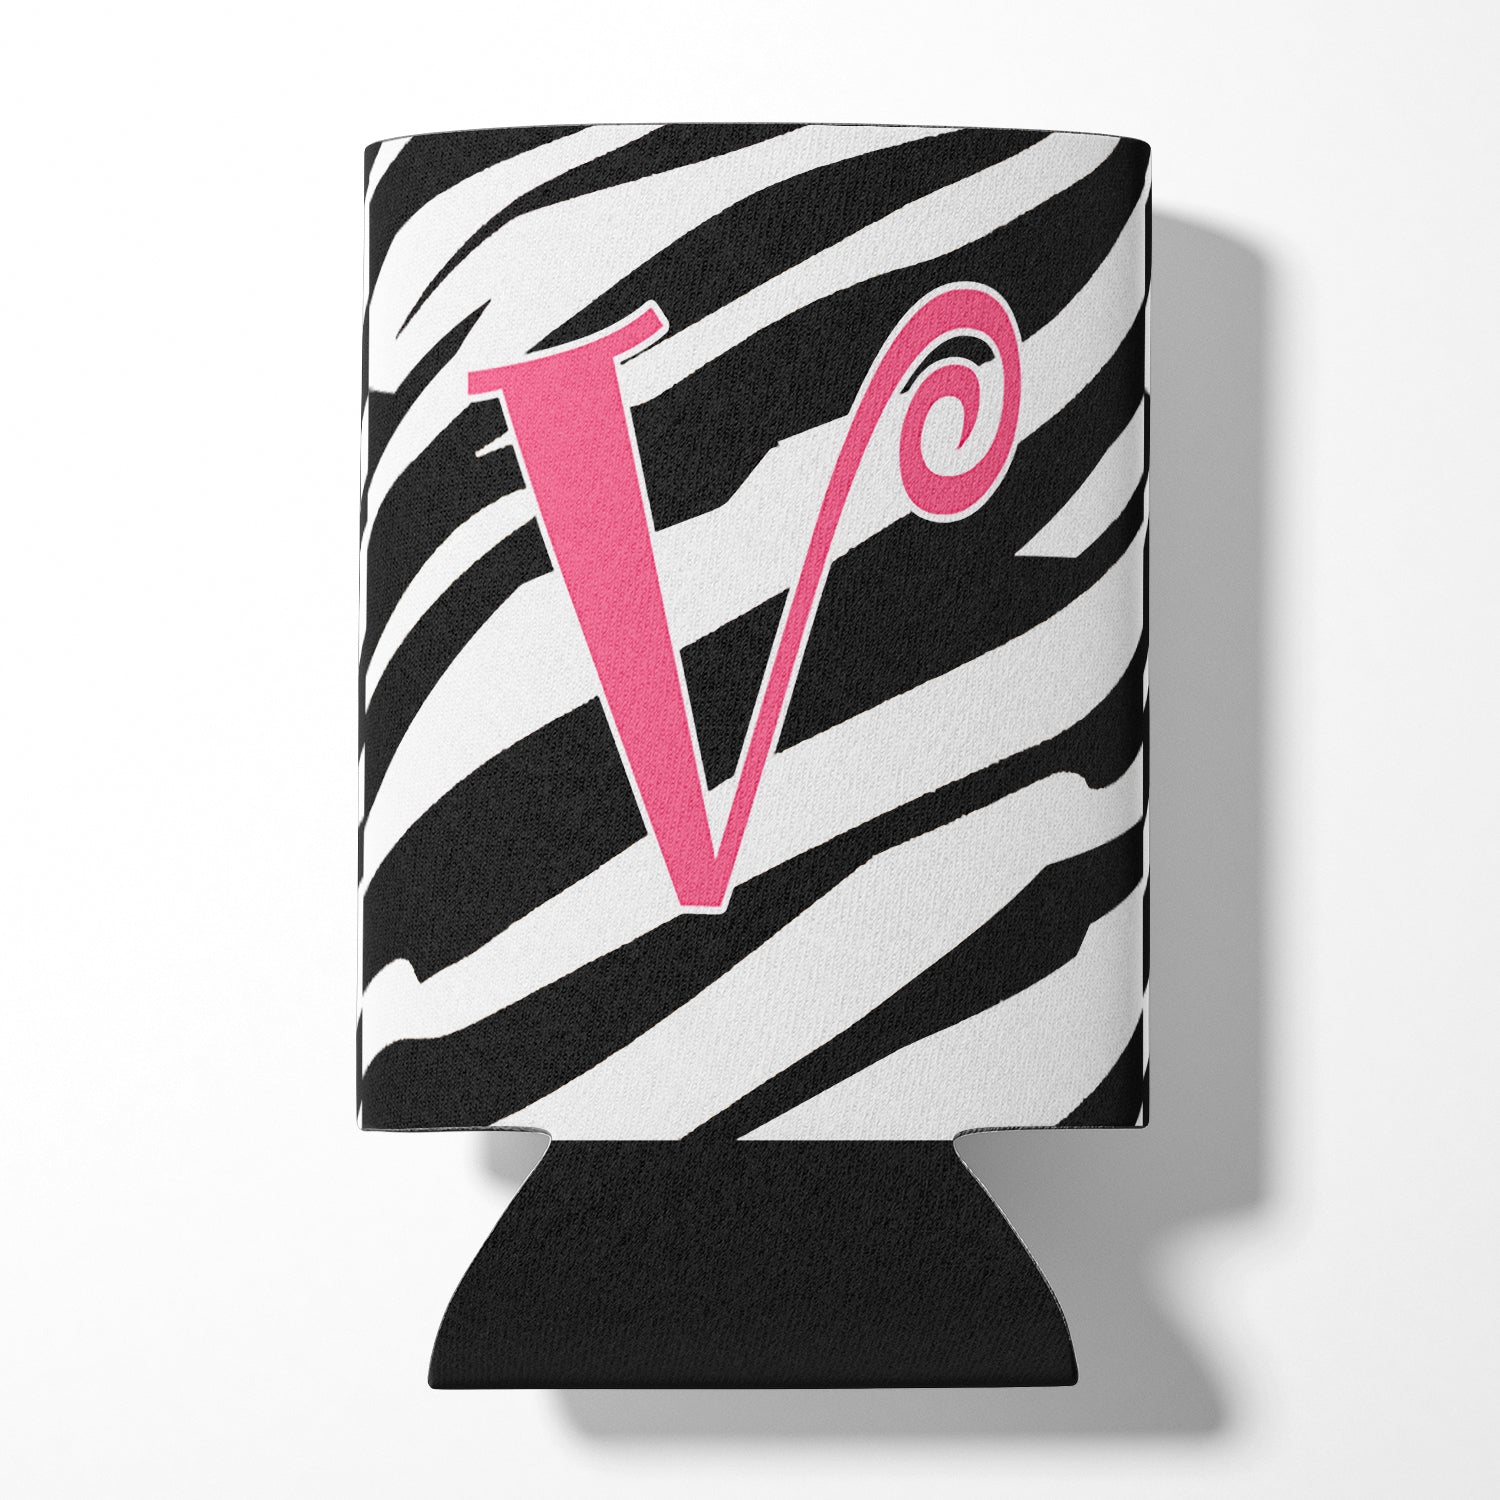 Monogramme initial de la lettre V - Zebra Stripe et Pink Can or Bottle Beverage Insulator Hugger